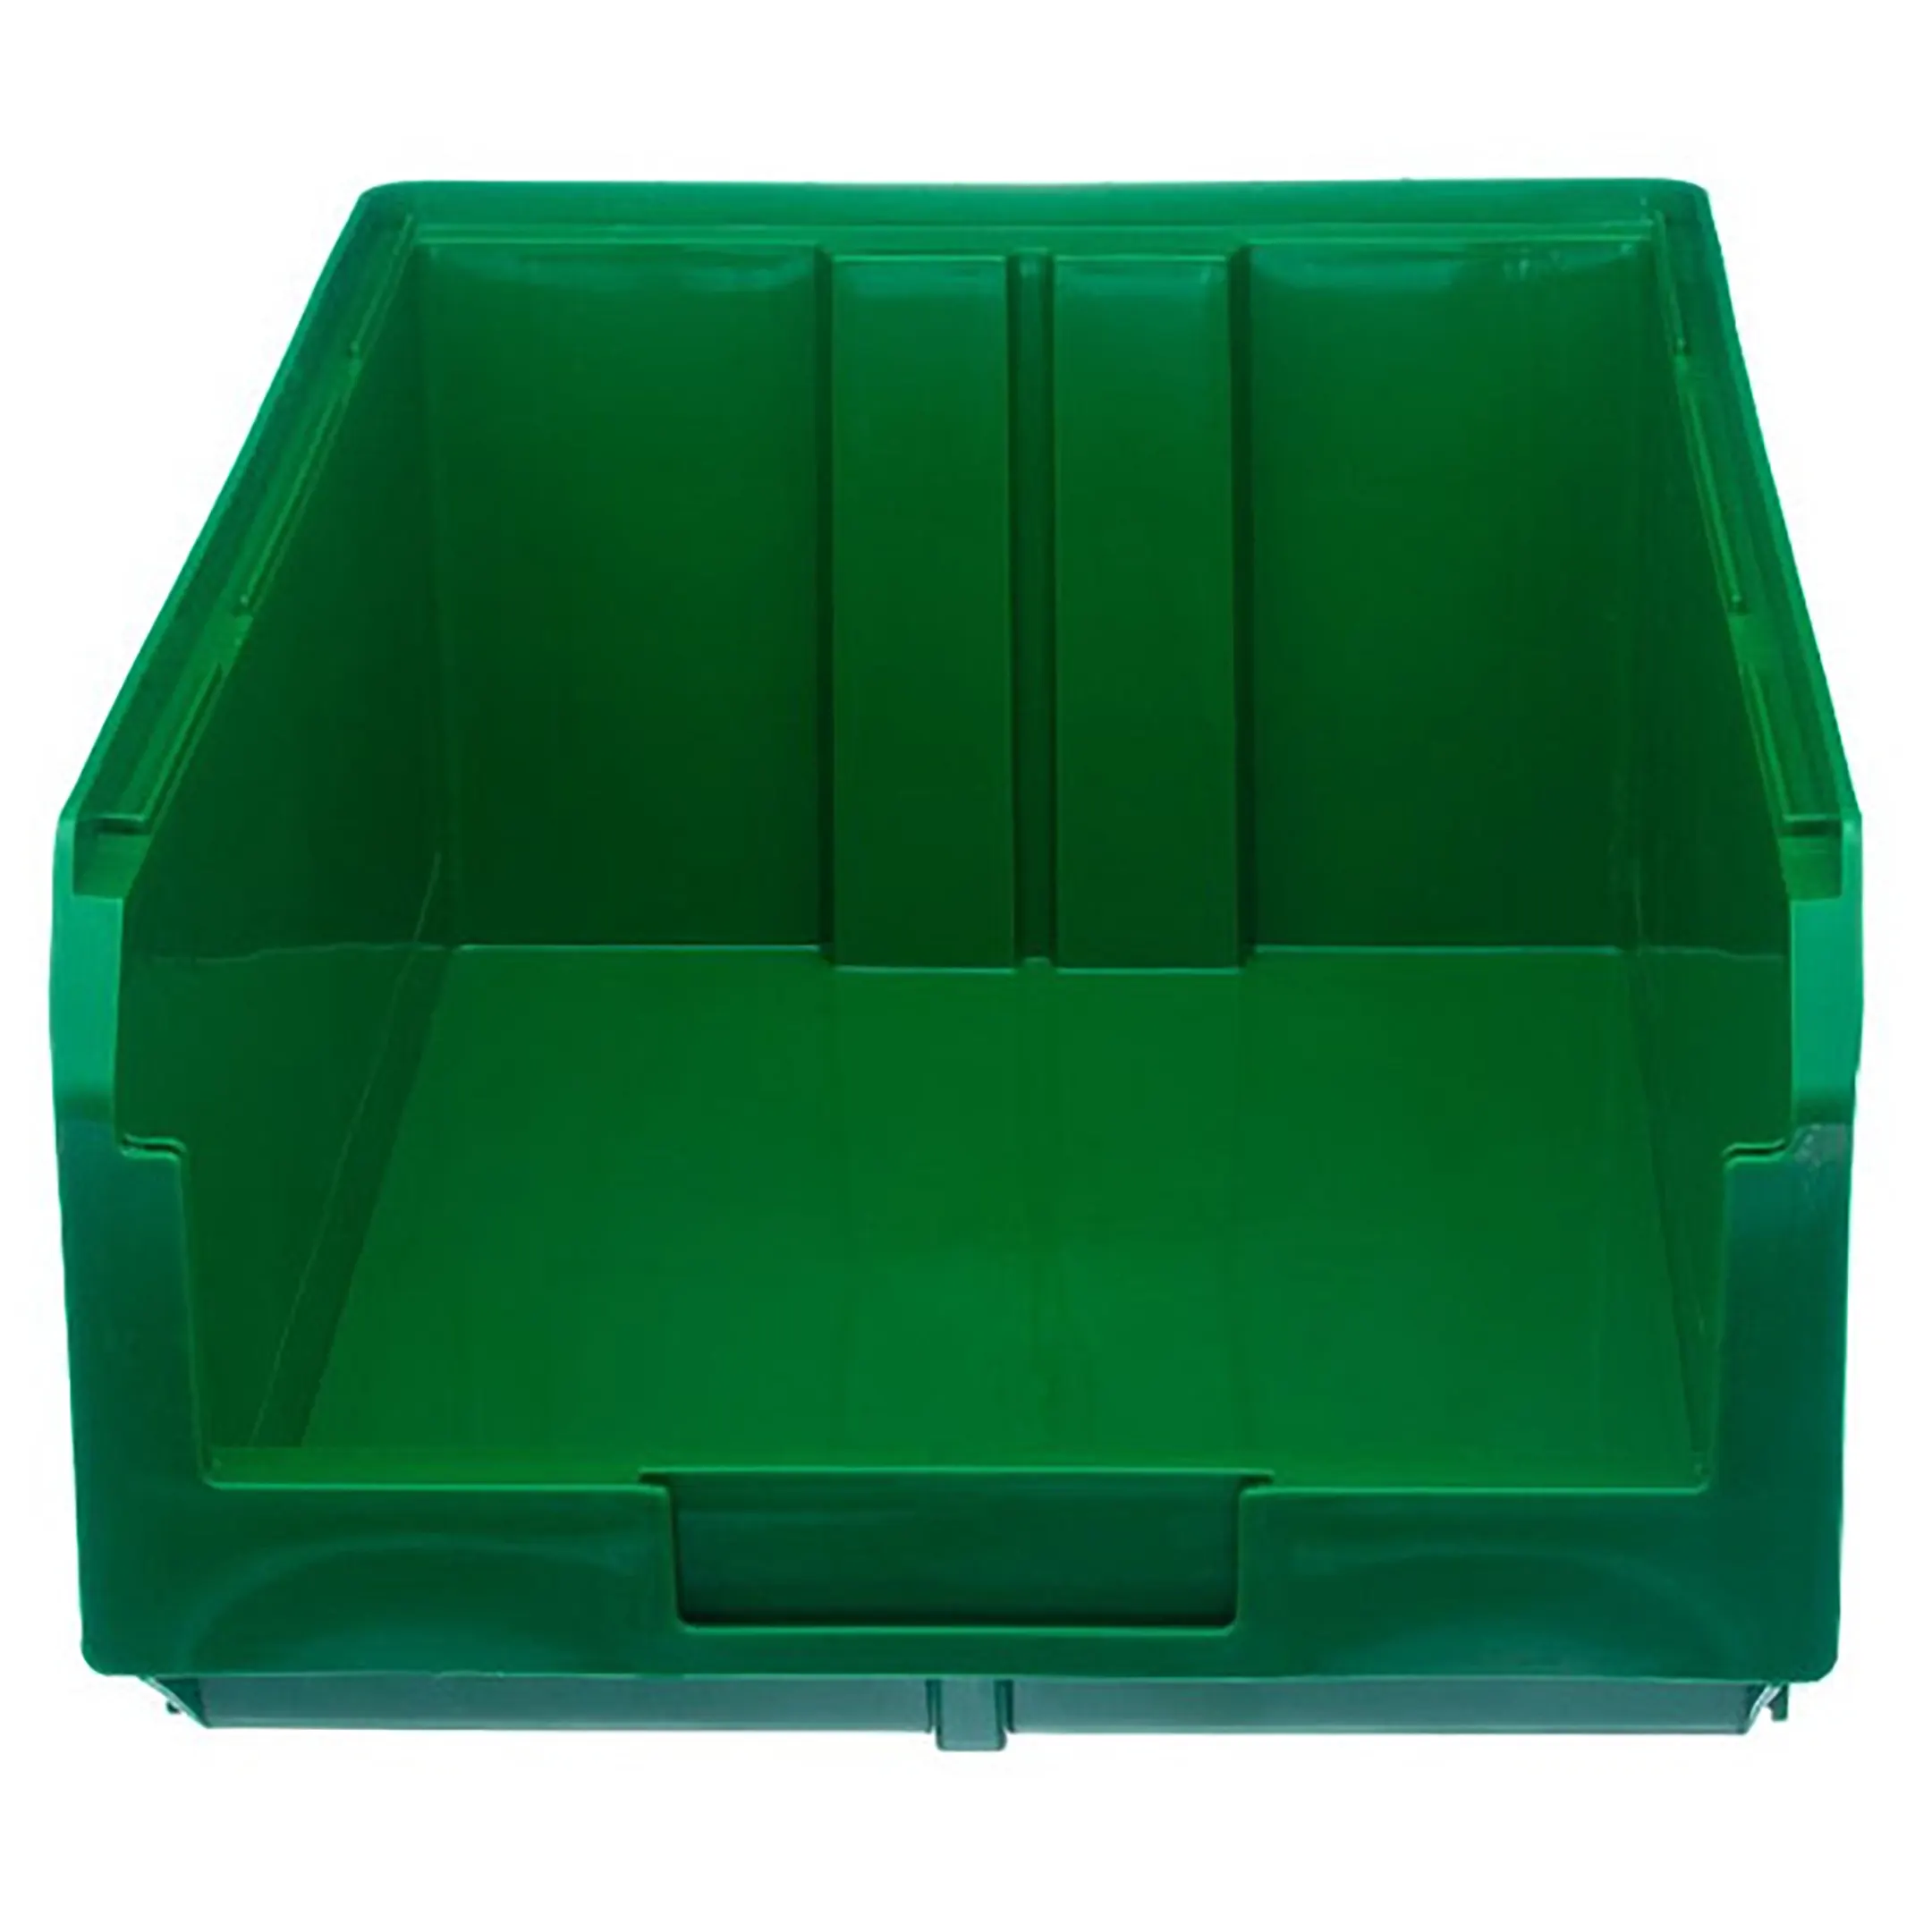 Пластиковый ящик V-4 (Зелёный)